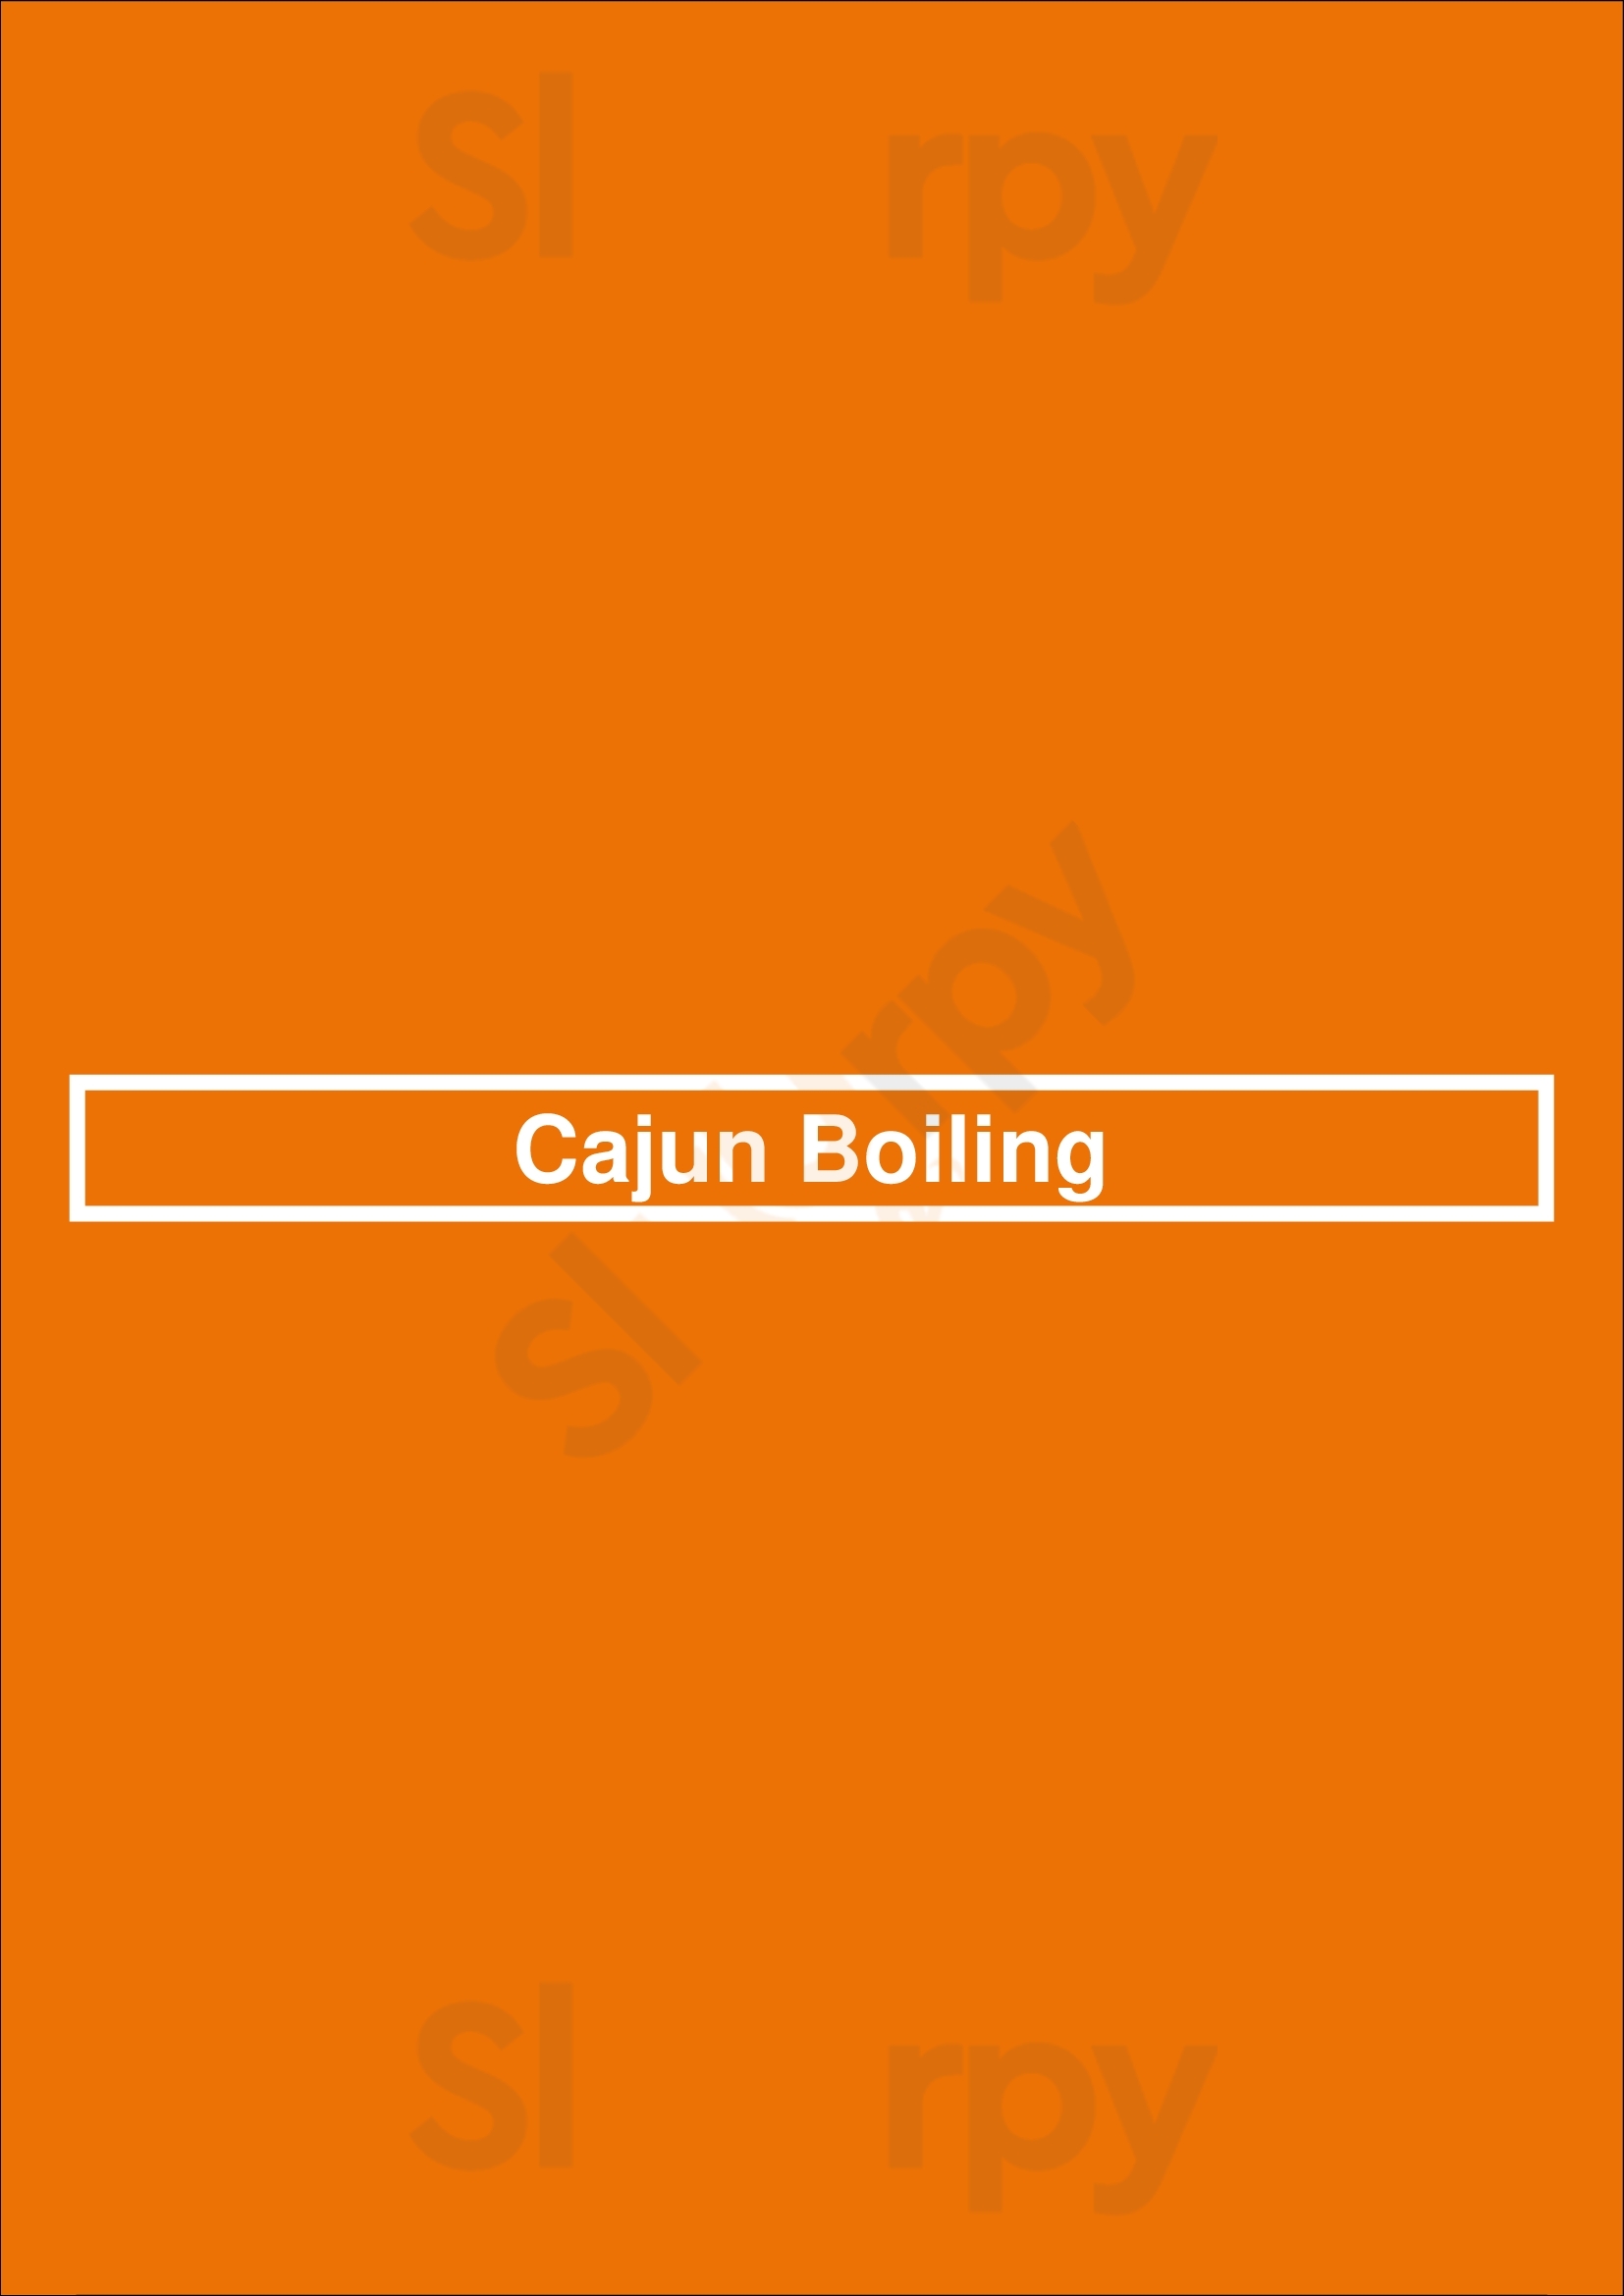 Cajun Boiling Minneapolis Menu - 1